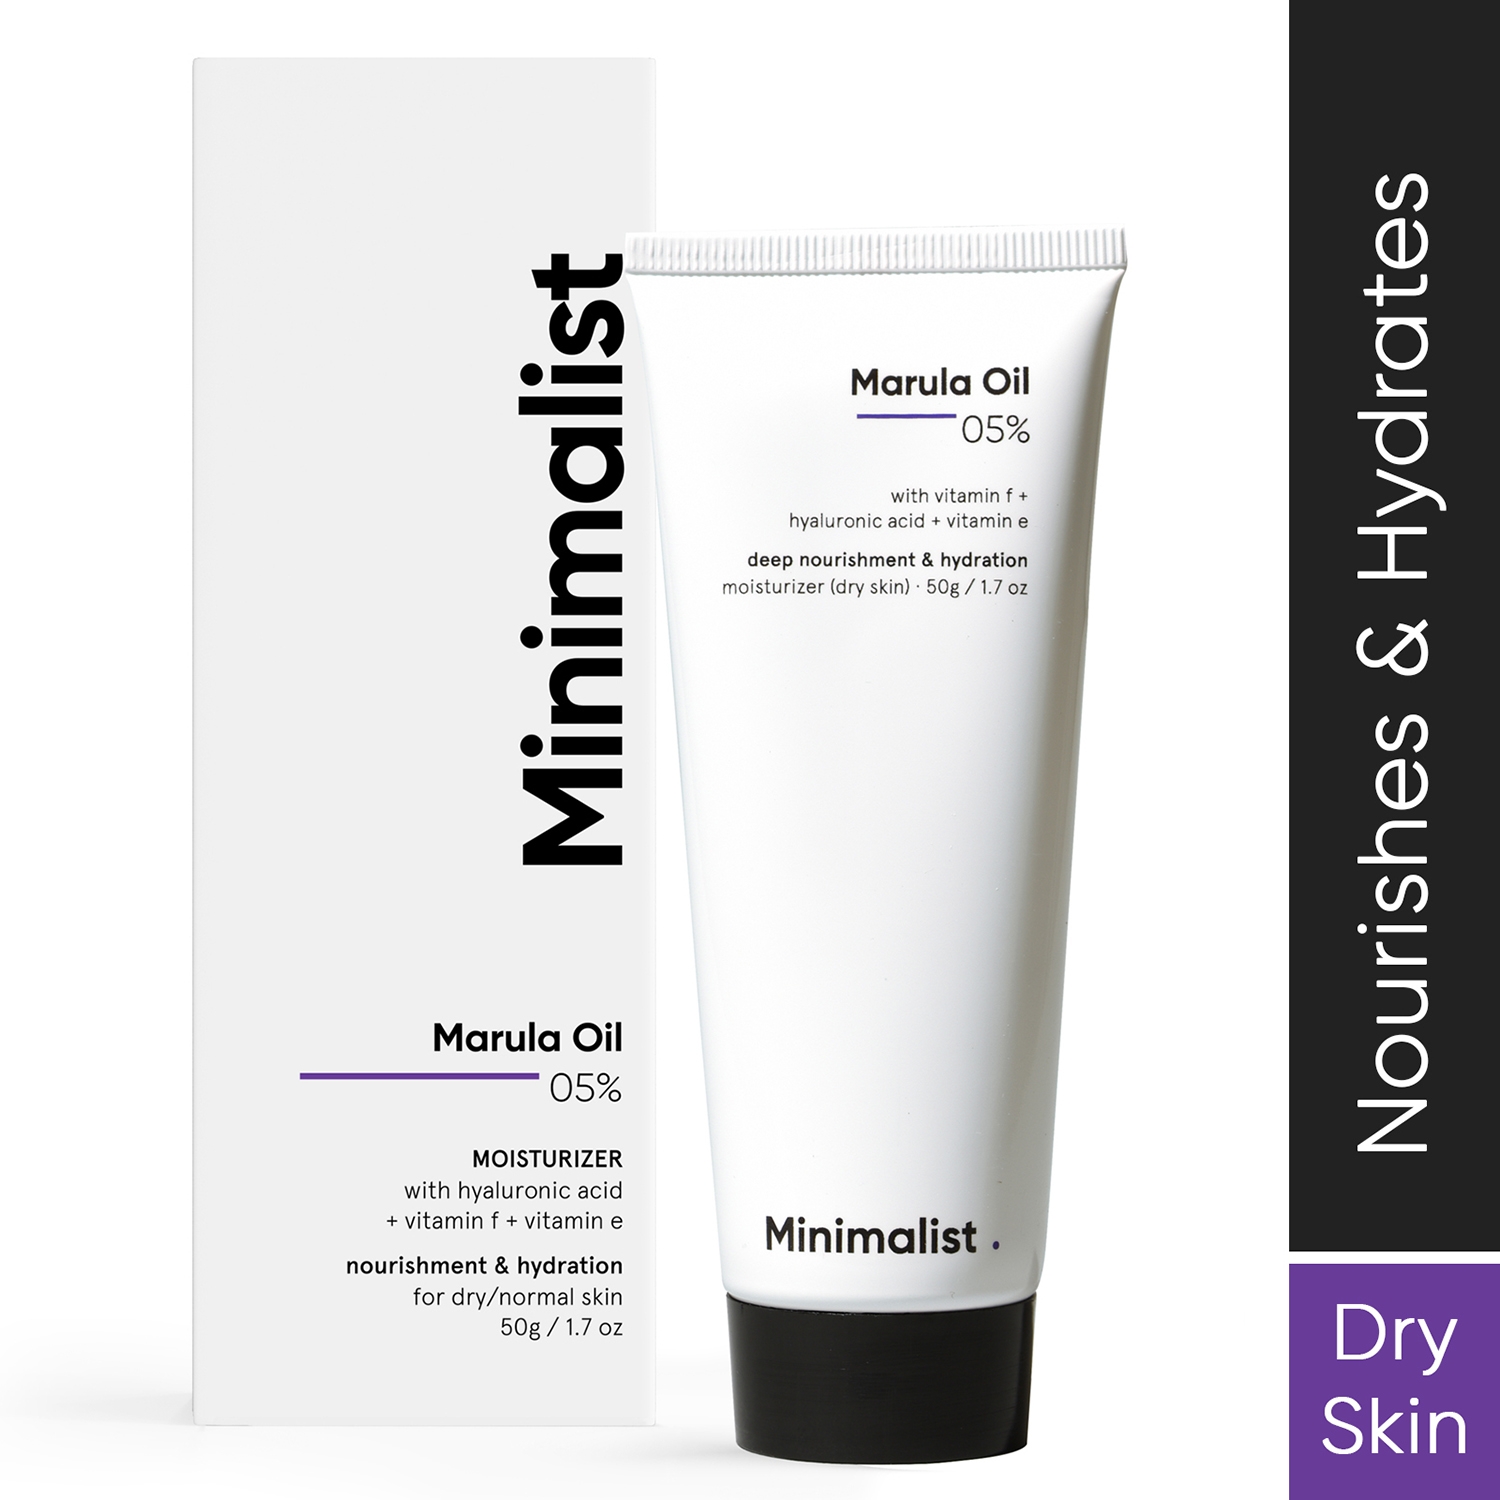 Minimalist 5% Marula Oil Face Moisturizer For Dry Skin Cream Hyaluronic Acid For Nourishment (50g)